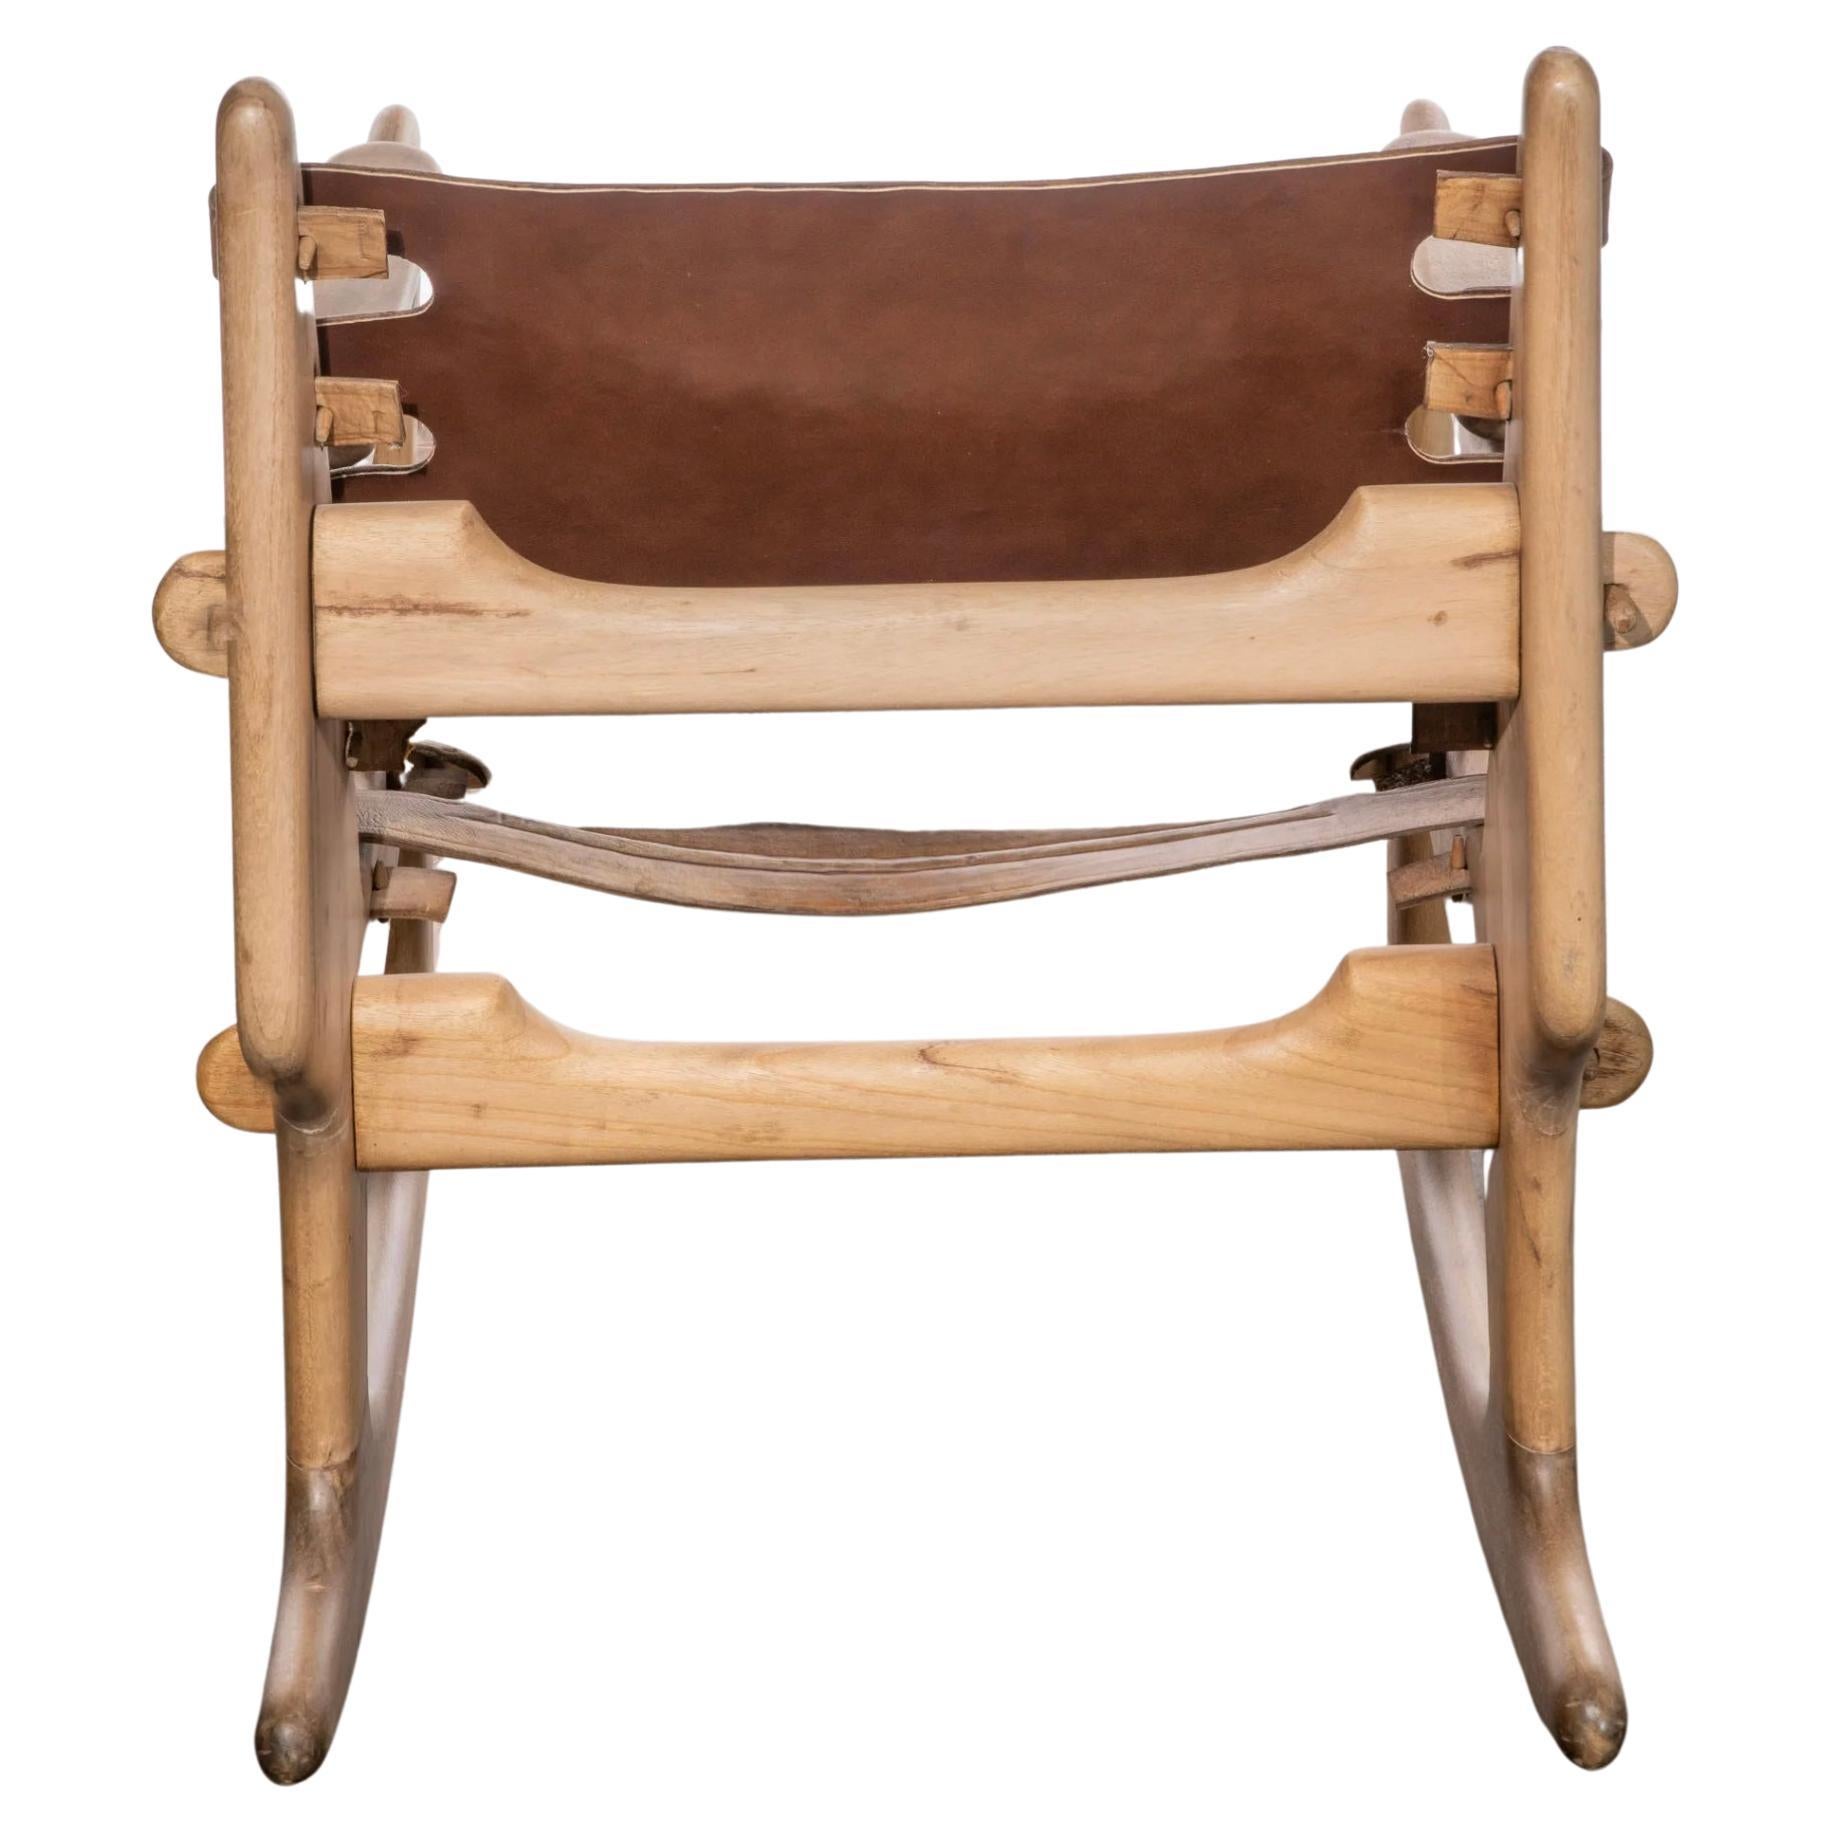 Chaise légère en bois massif à bascule safari Tan tooled Leather par le designer équatorien Angel Pazmino. Cuir fauve estampé d'origine. Belle patine sur le cuir et le bois. Toutes les goupilles sont présentes et il est solide. Fabriqué en Équateur.